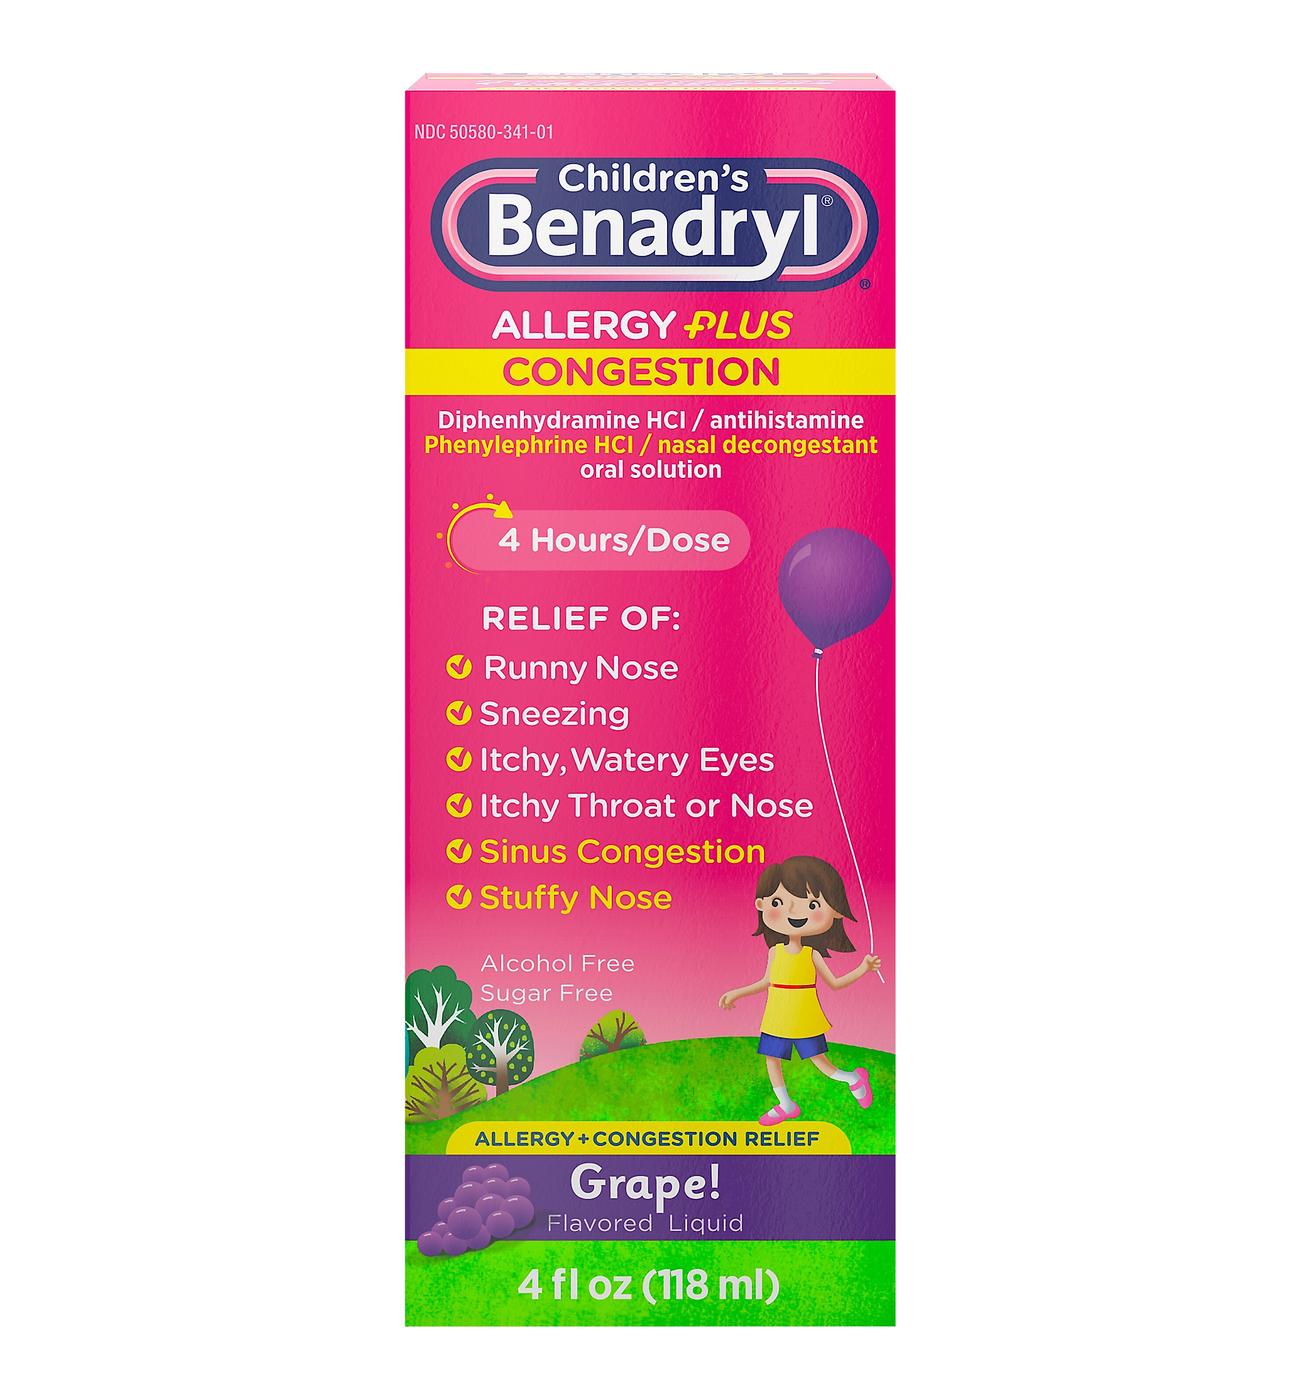 Benadryl Children's Allergy Plus Congestion Relief Liquid - Grape; image 1 of 7